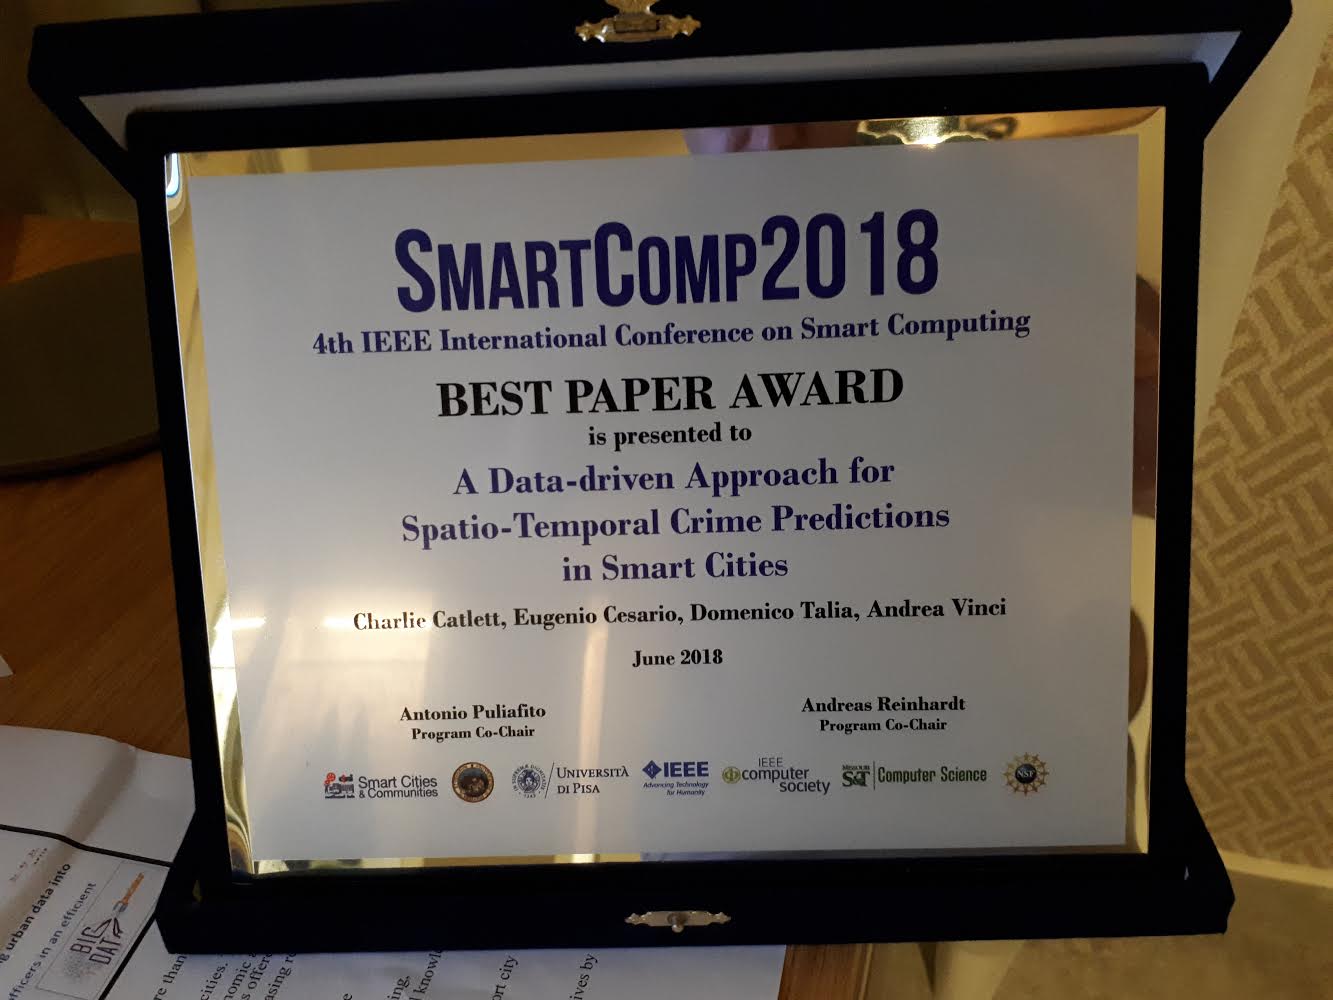 Best Paper Award in SMARTCOMP 2018